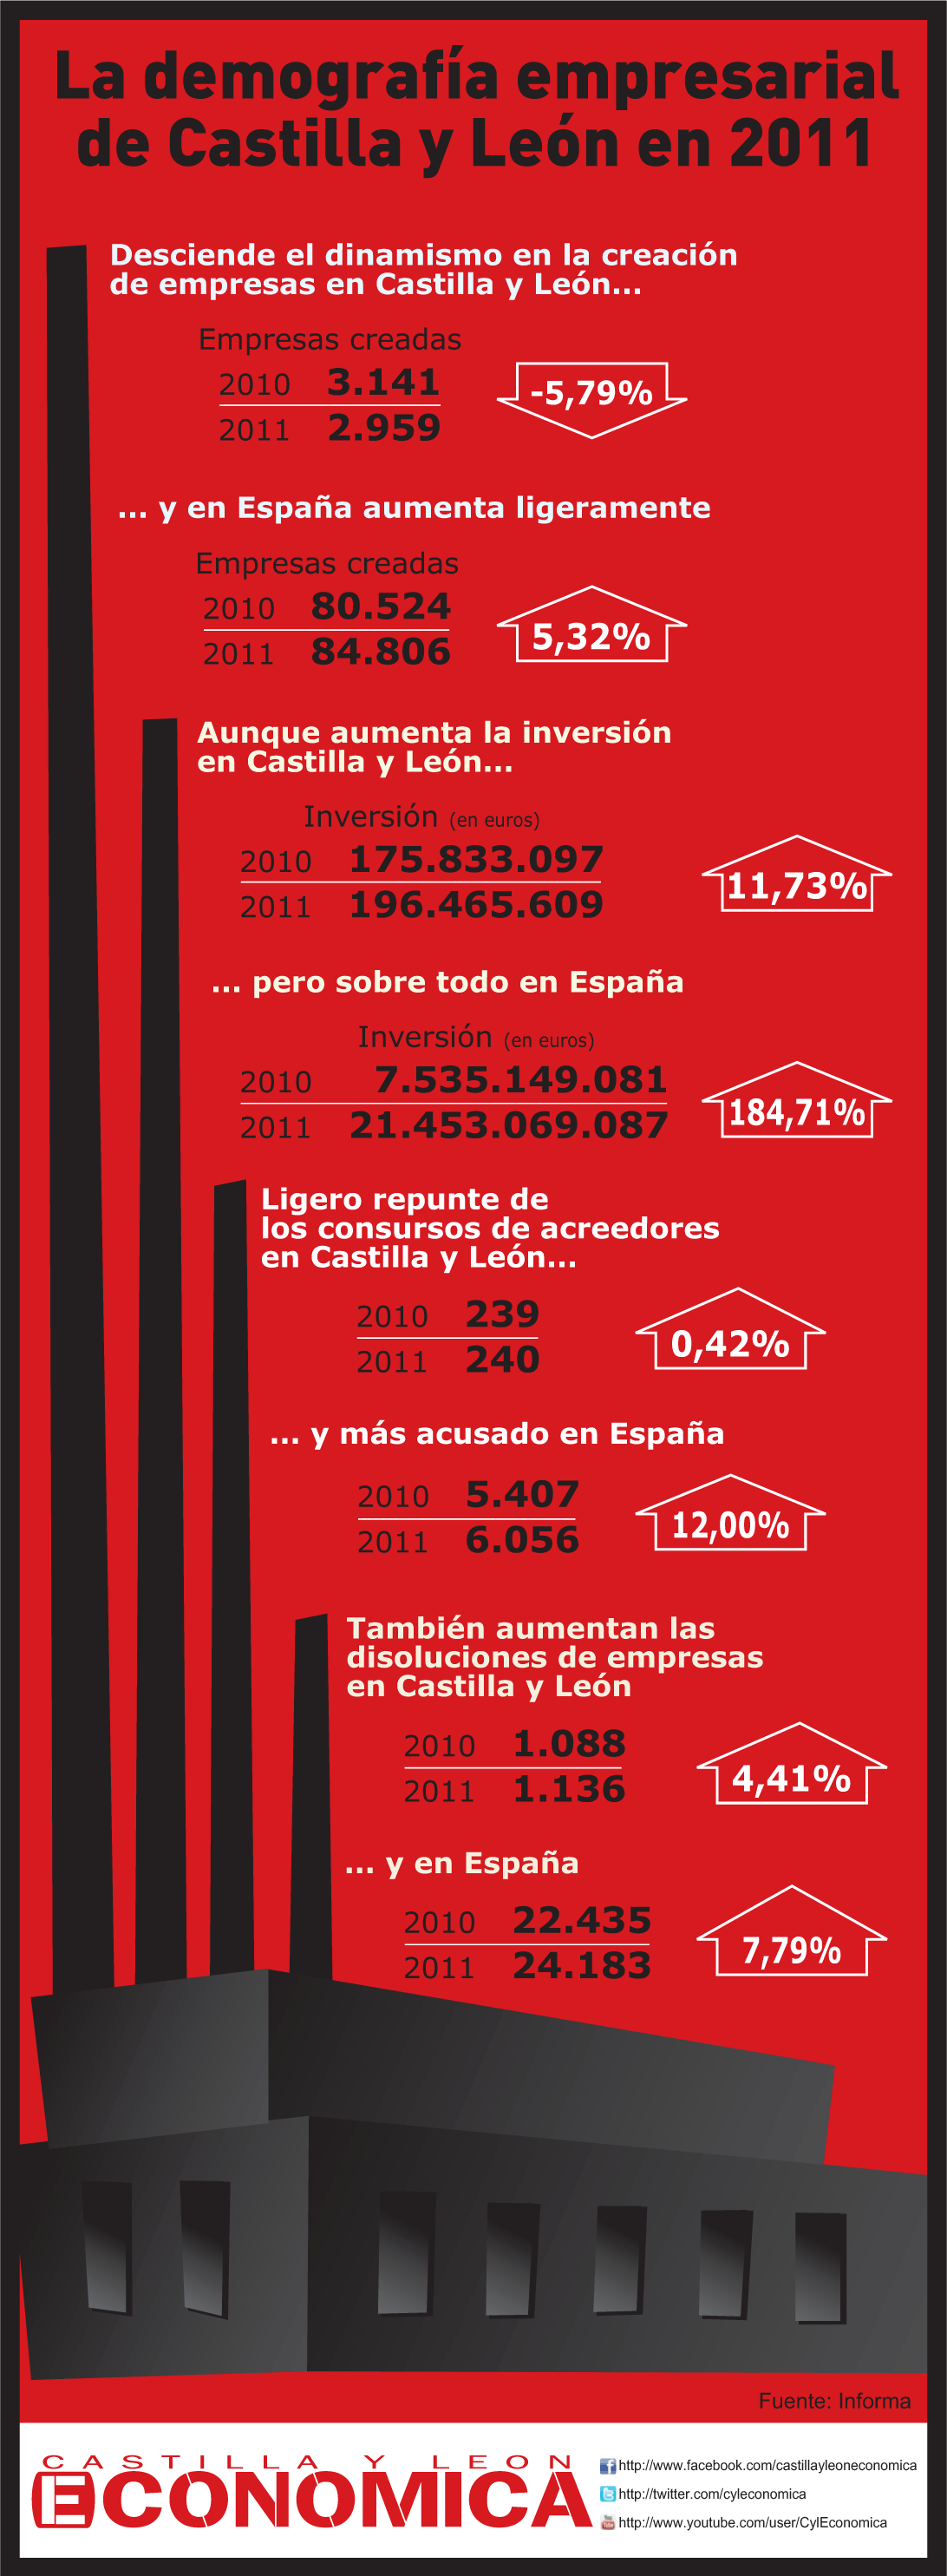 La demografía empresarial de Castilla y León en 2011 Infographic